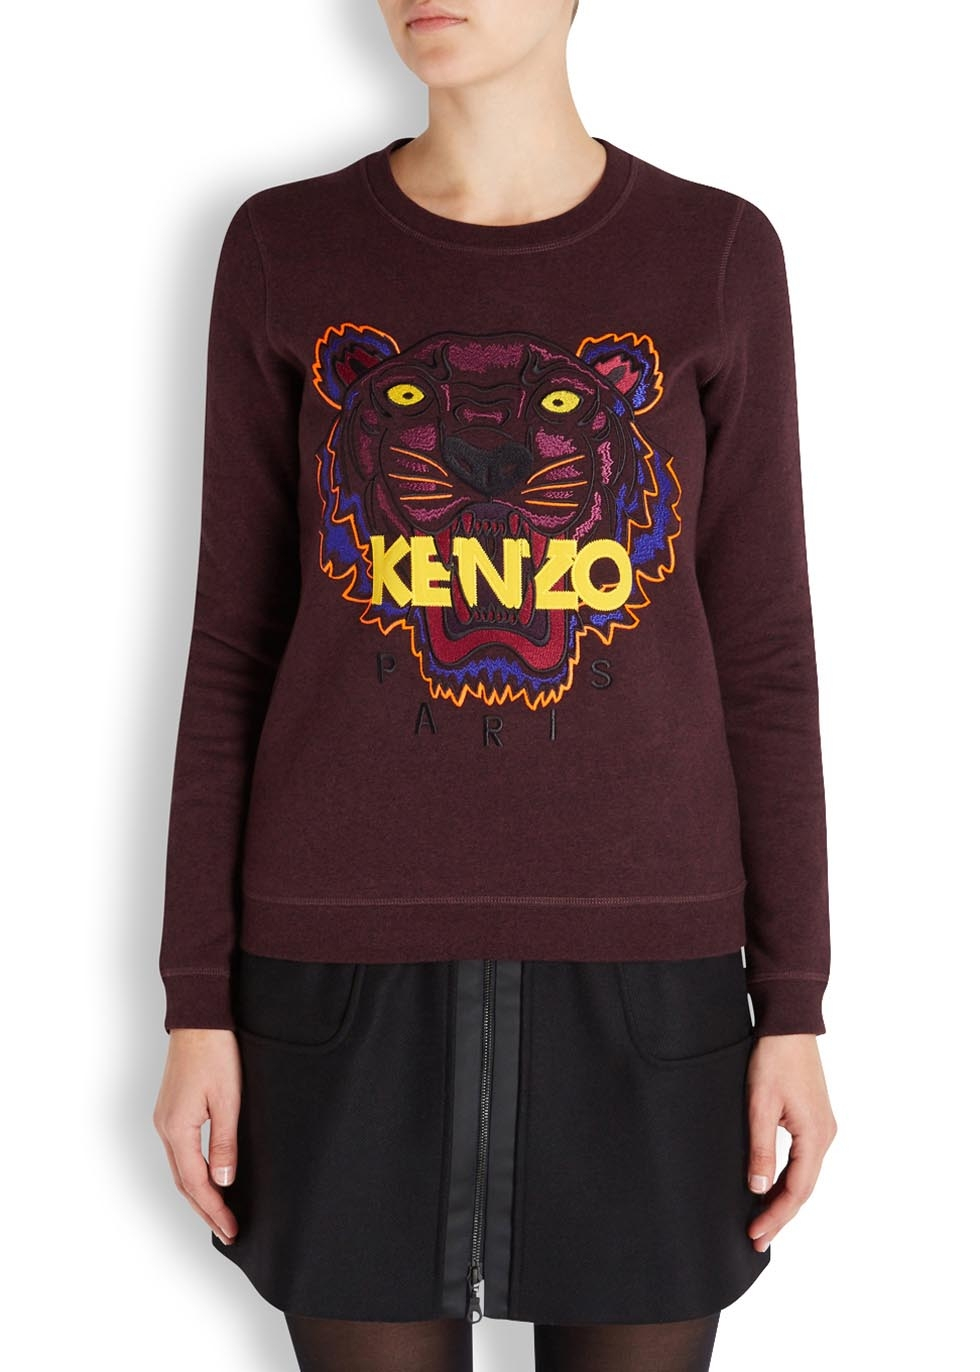 burgundy kenzo shirt